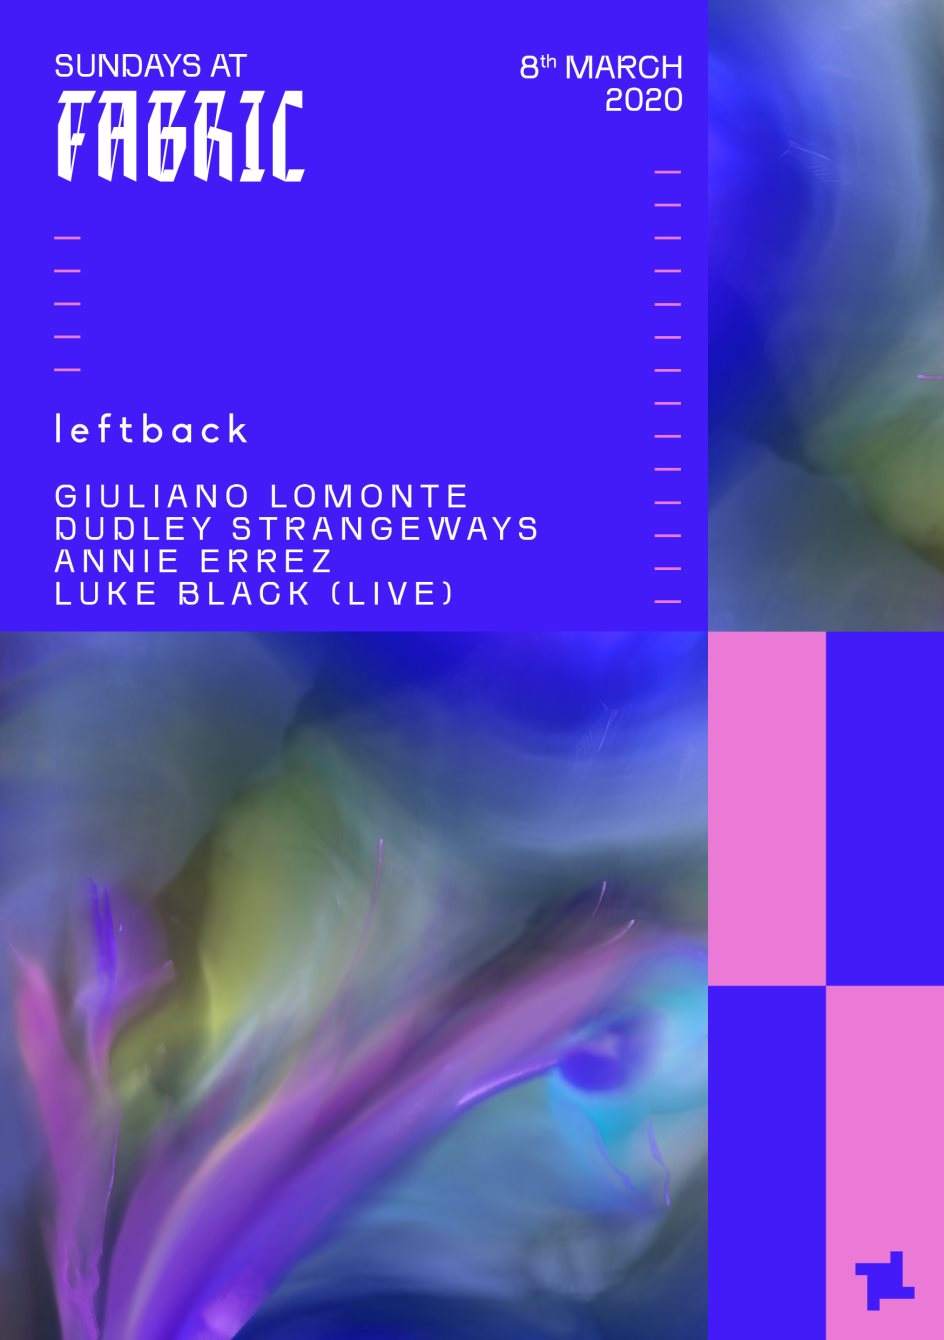 Sundays at fabric: Leftback with Giuliano Lomonte - フライヤー裏